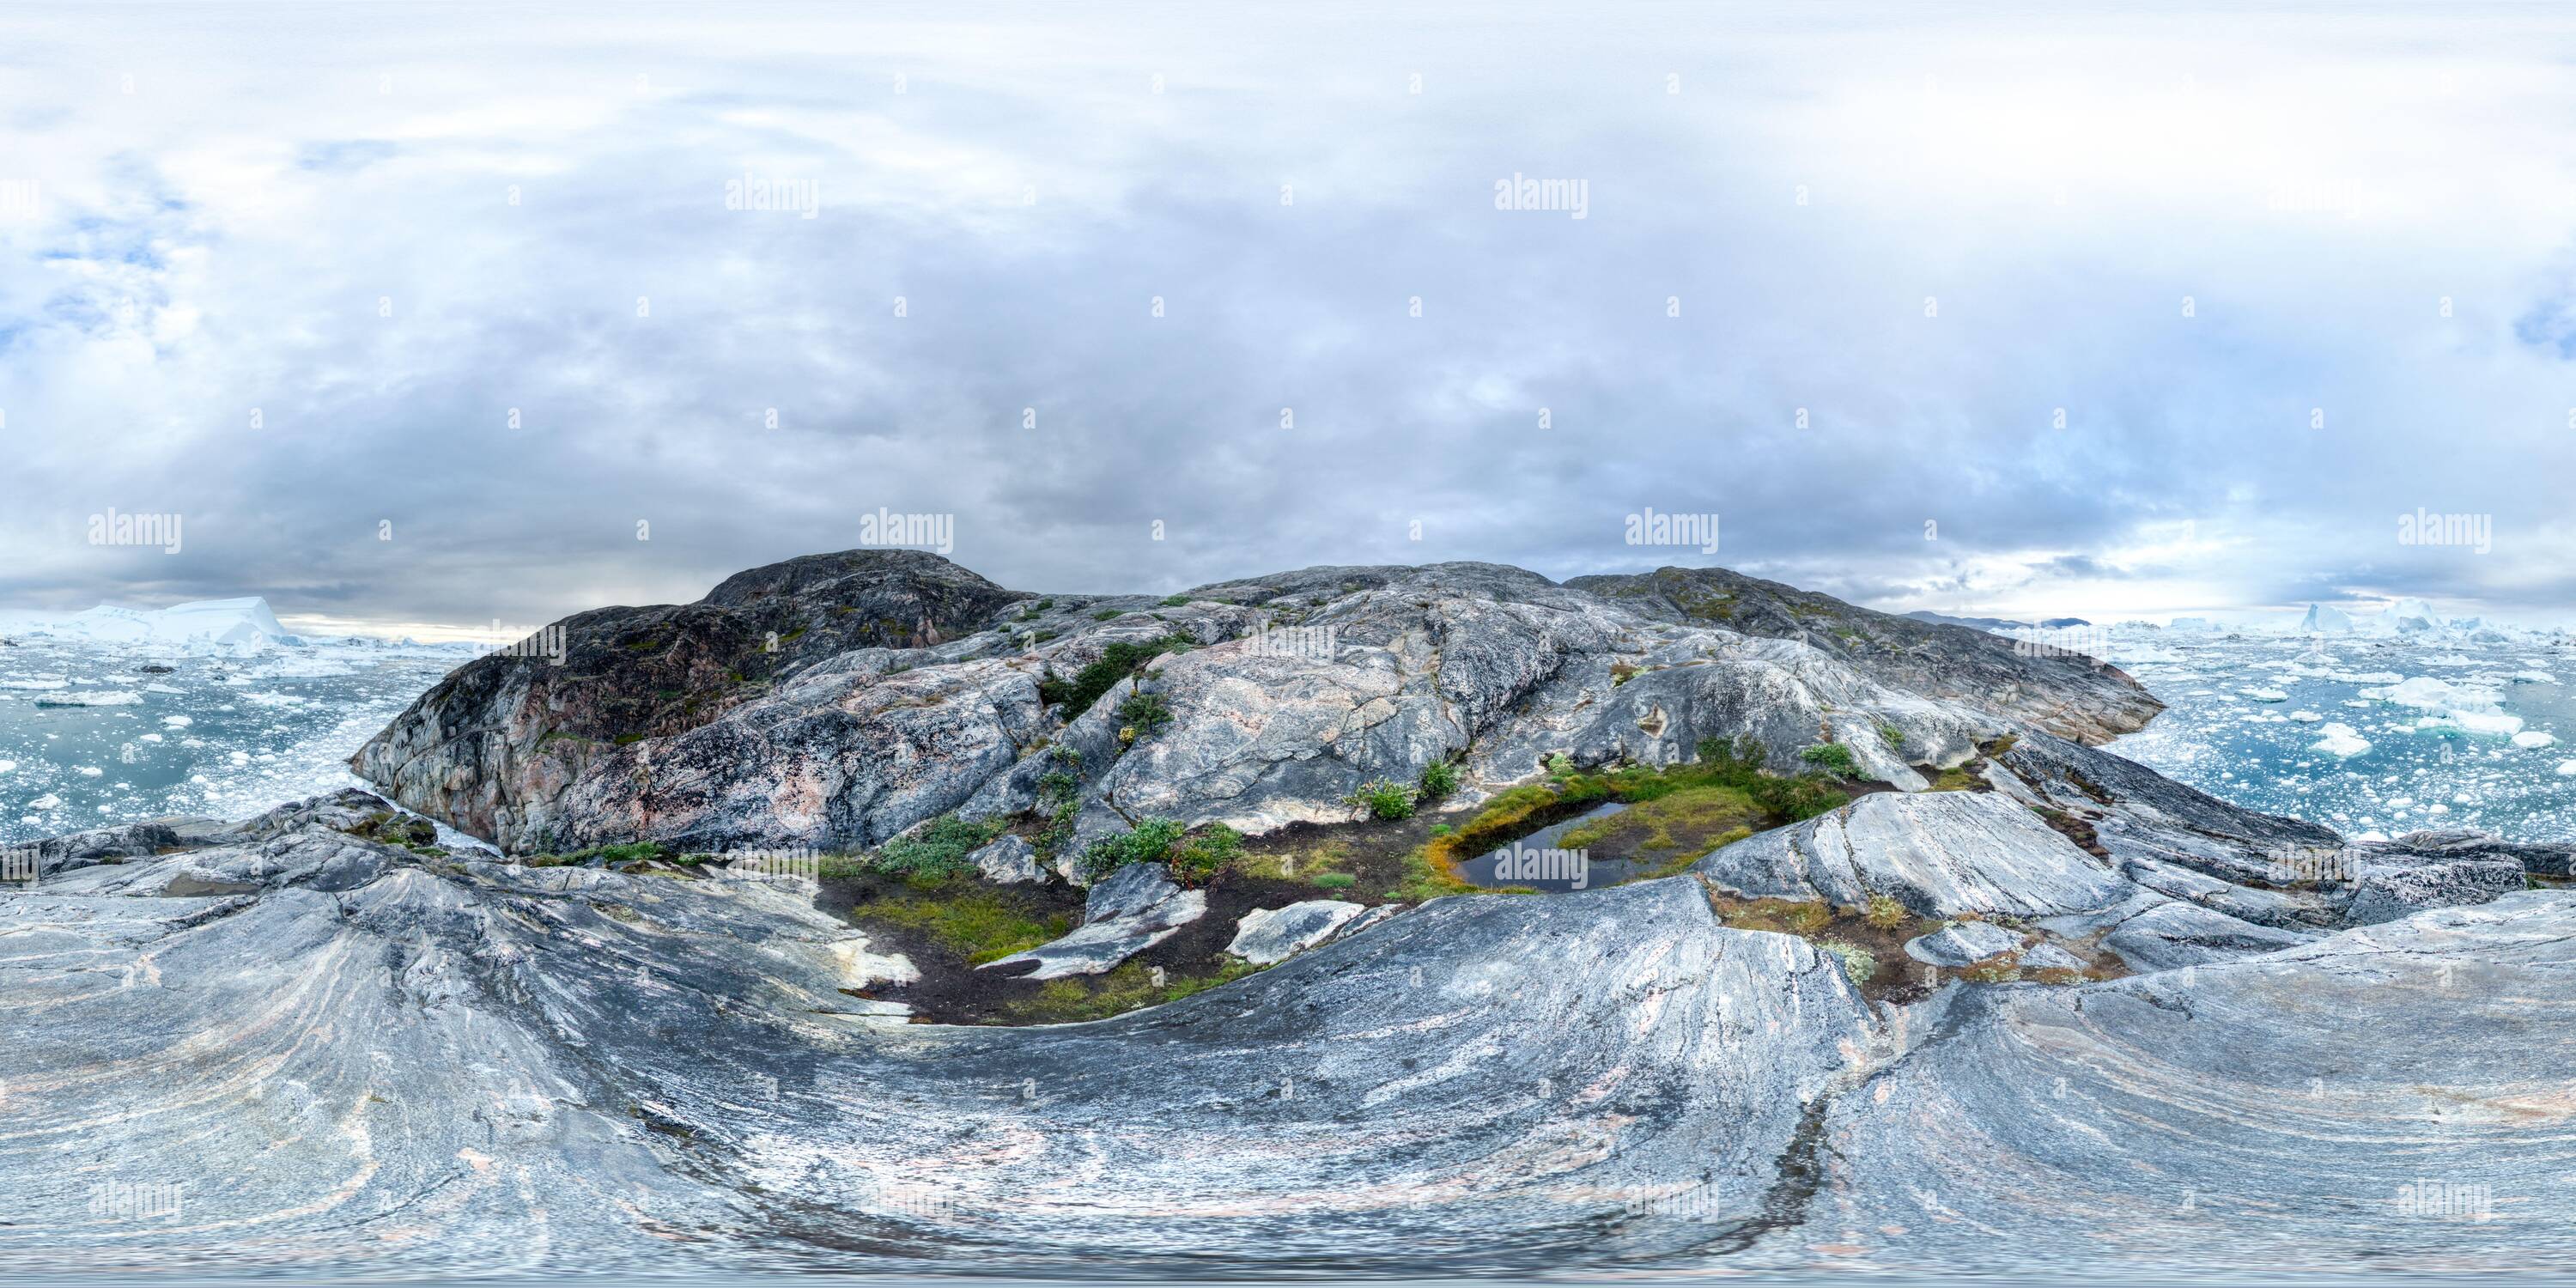 Vue panoramique à 360° de 360 vue sur Ilulissat icefjord